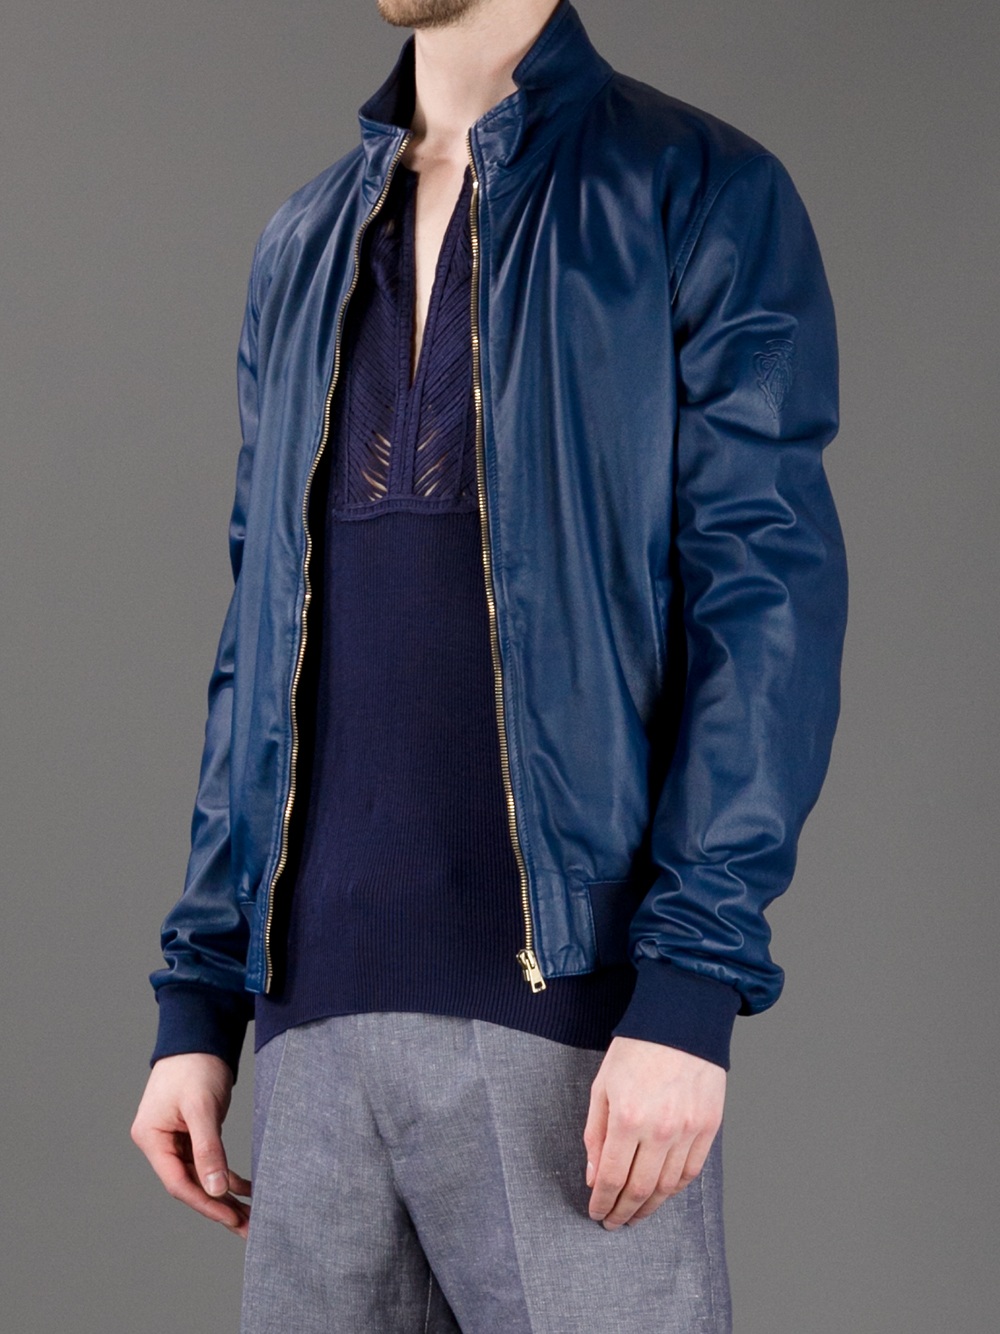 Brobrygge Akvarium Mandag Gucci Leather Bomber Jacket in Blue for Men | Lyst